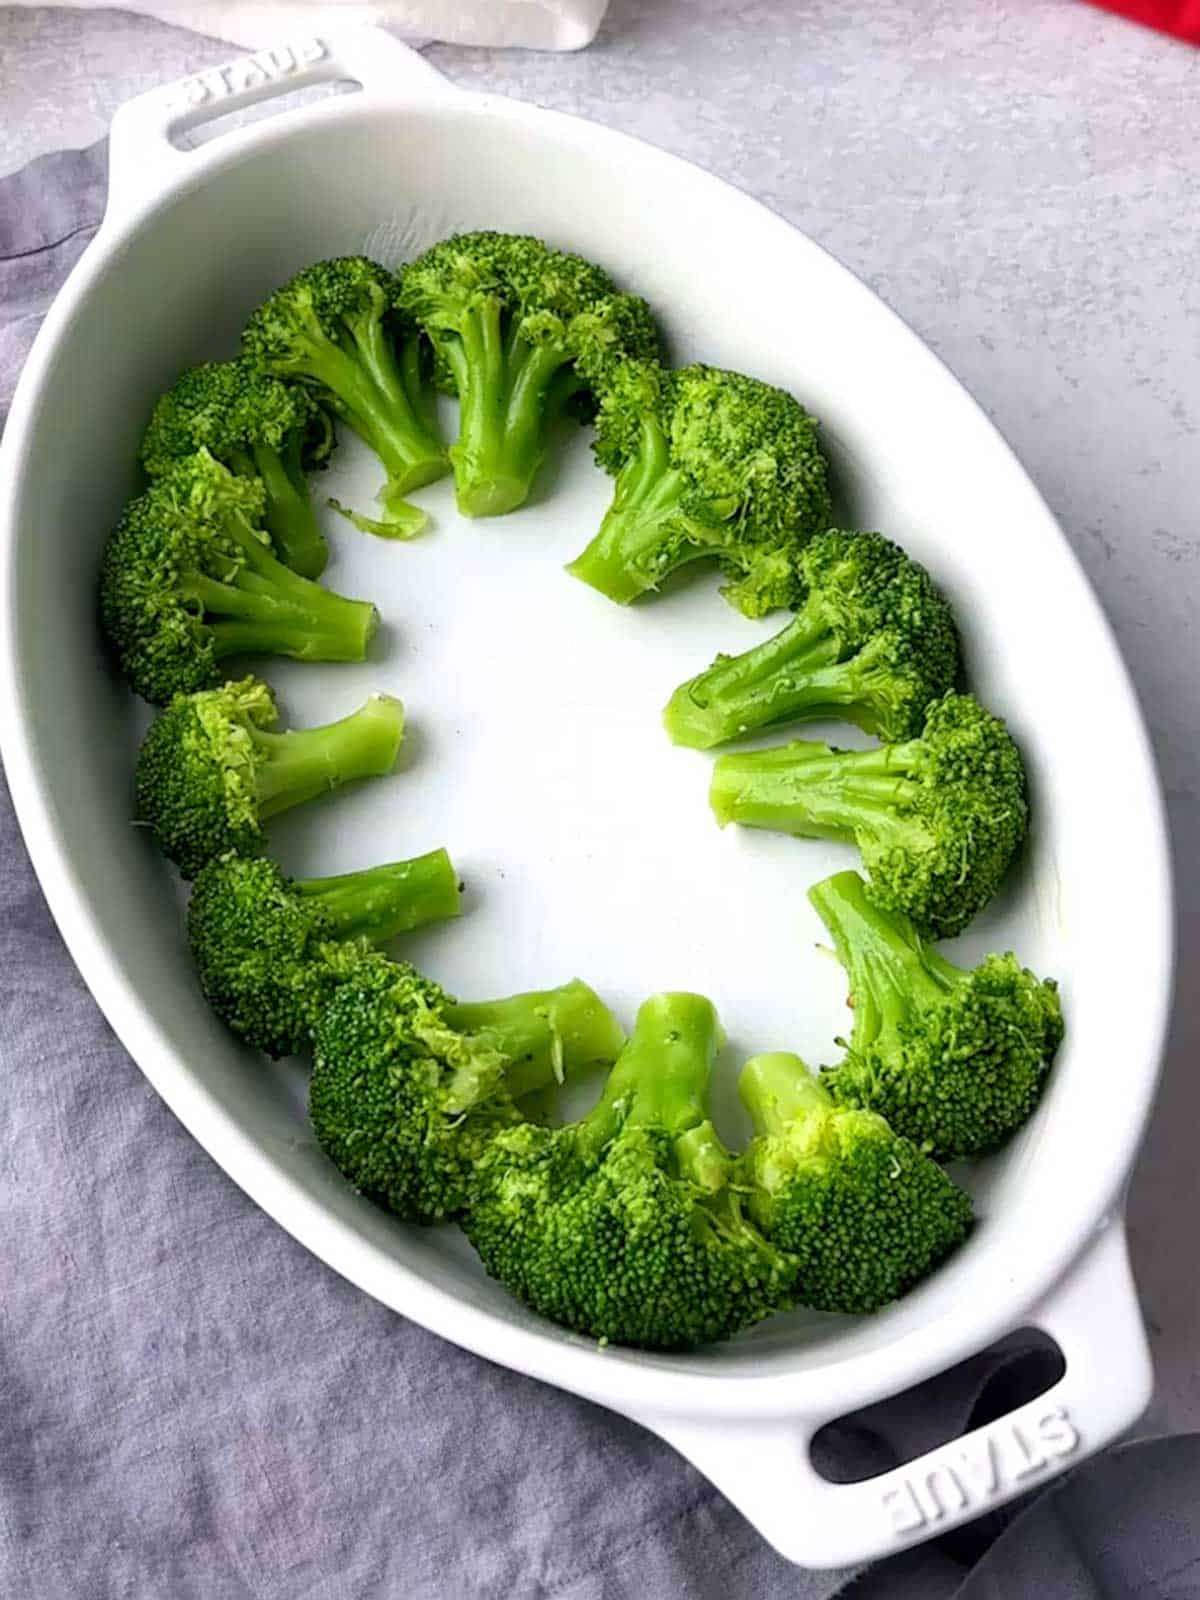 Broccoli in casserole dish.